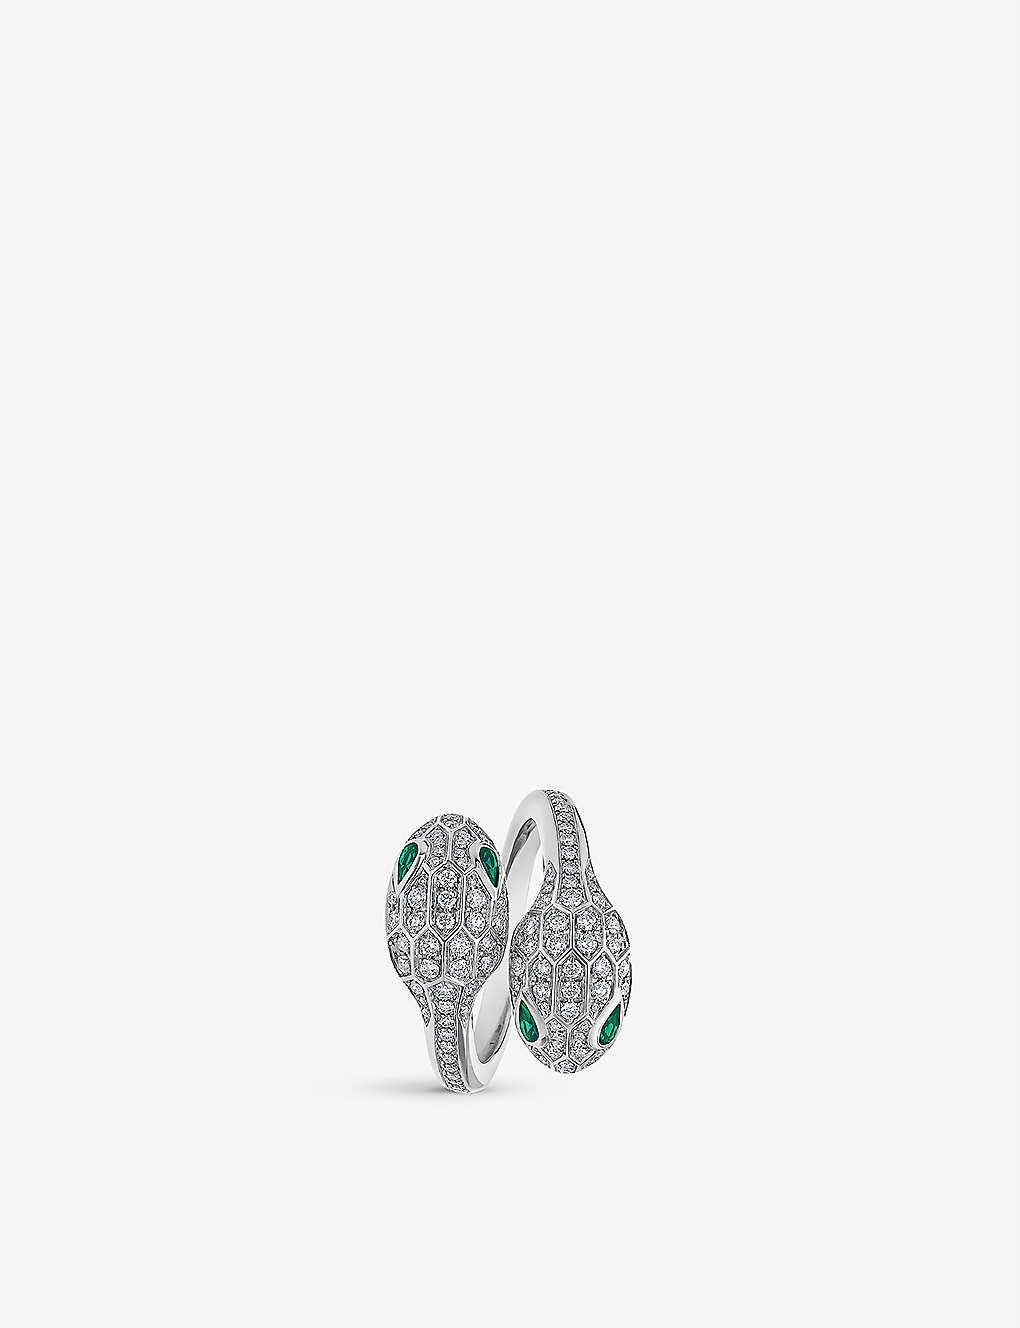 Serpenti Seduttori 18ct white-gold, 0.56ct brilliant-cut diamond and 0.2ct emerald ring - 2